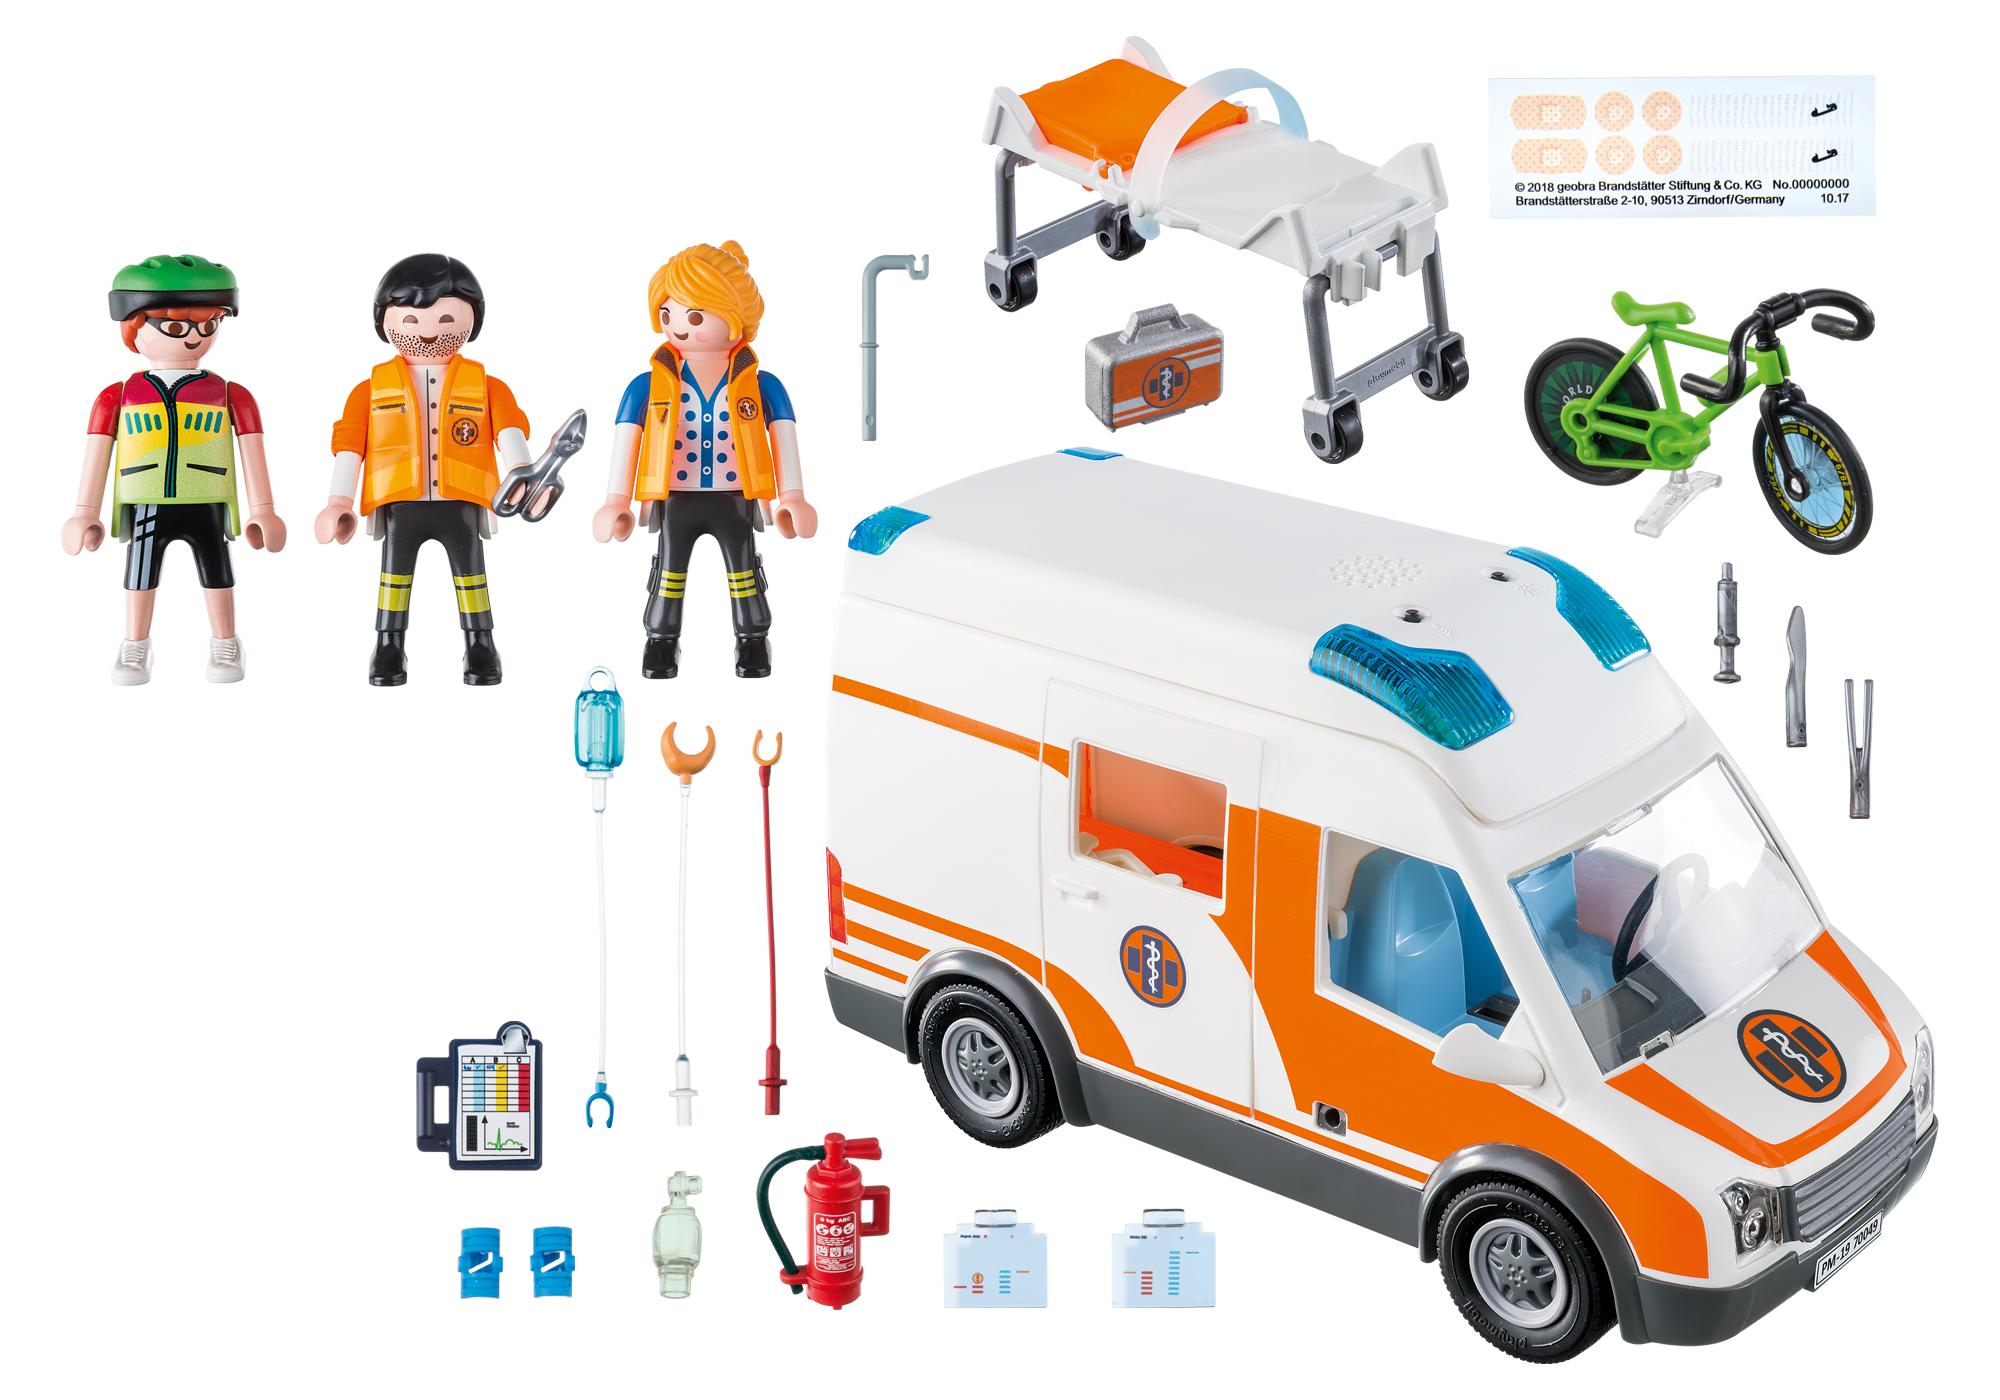 playmobil ambulance set